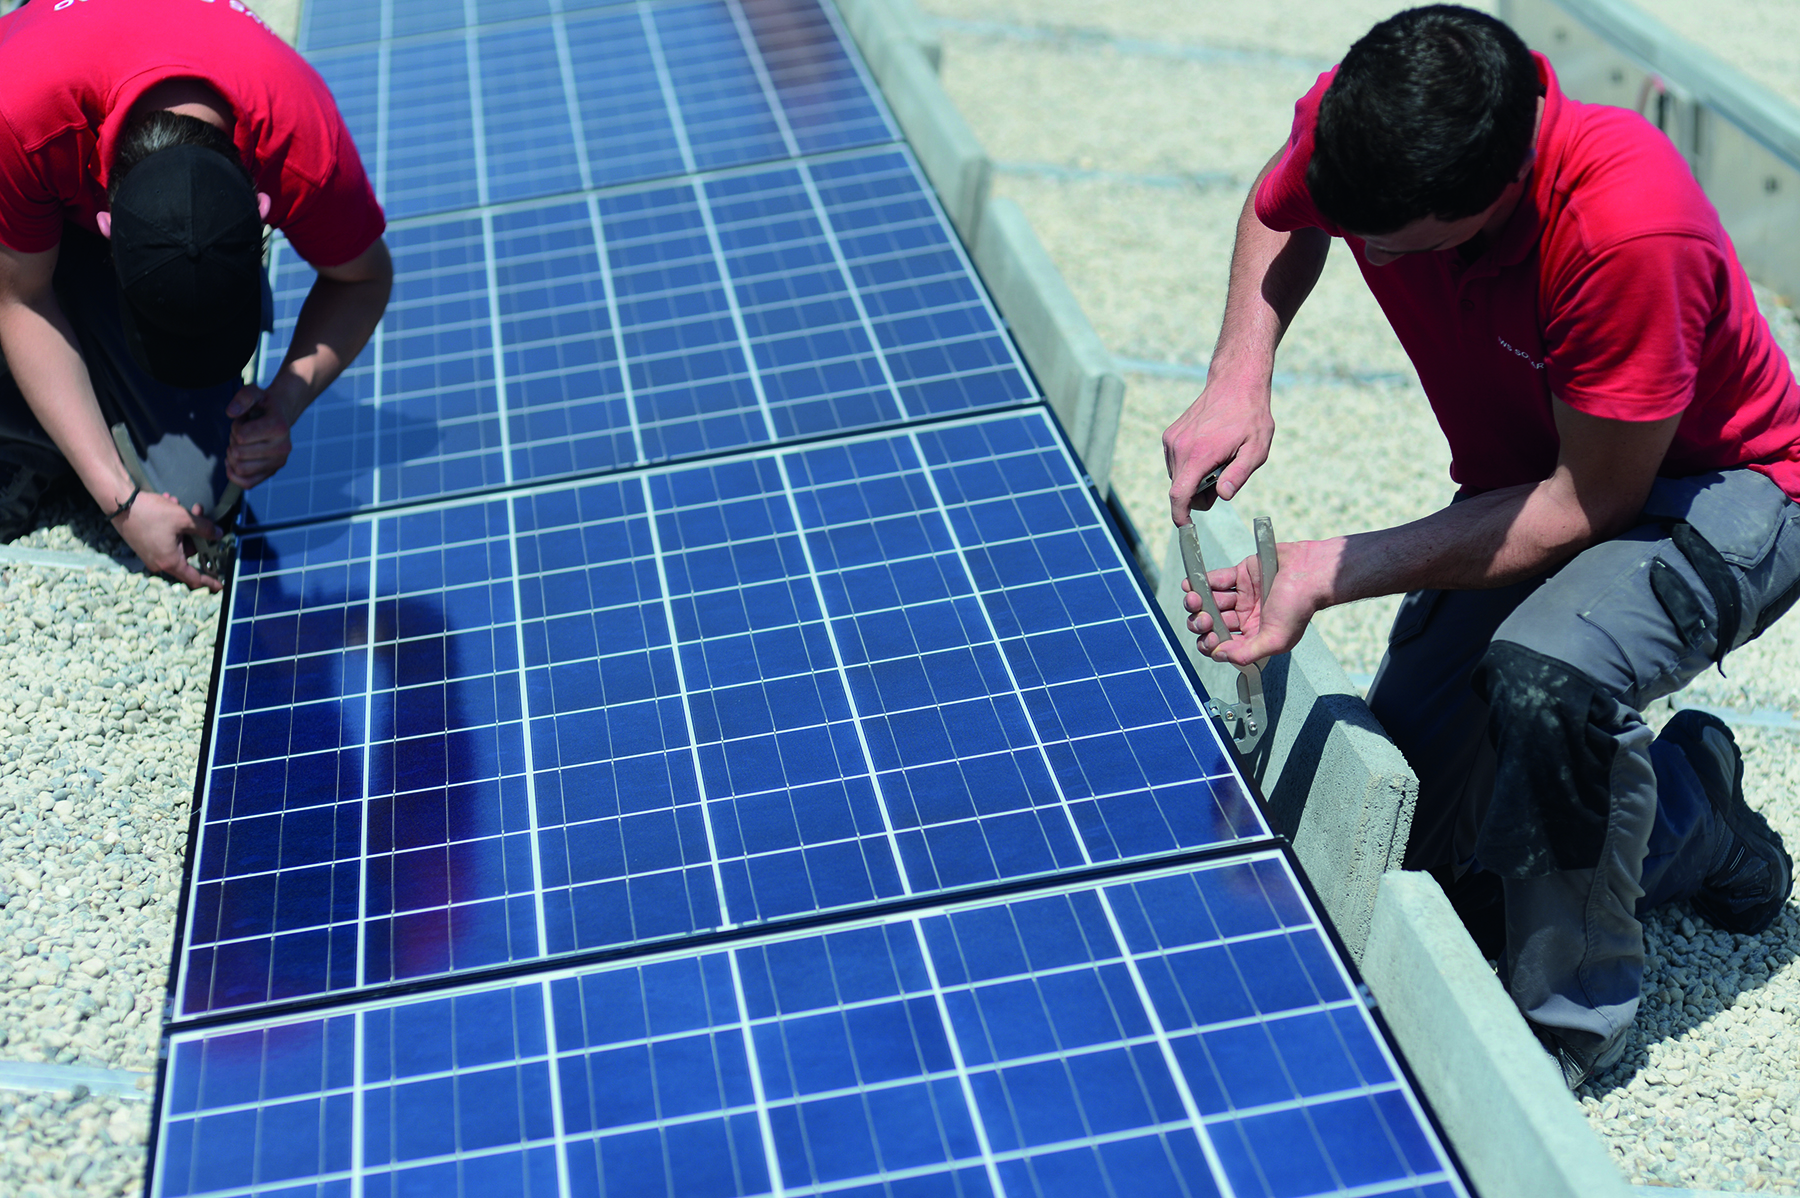 Deux installateurs solaires installent des panneaux solaires sur un toit plat